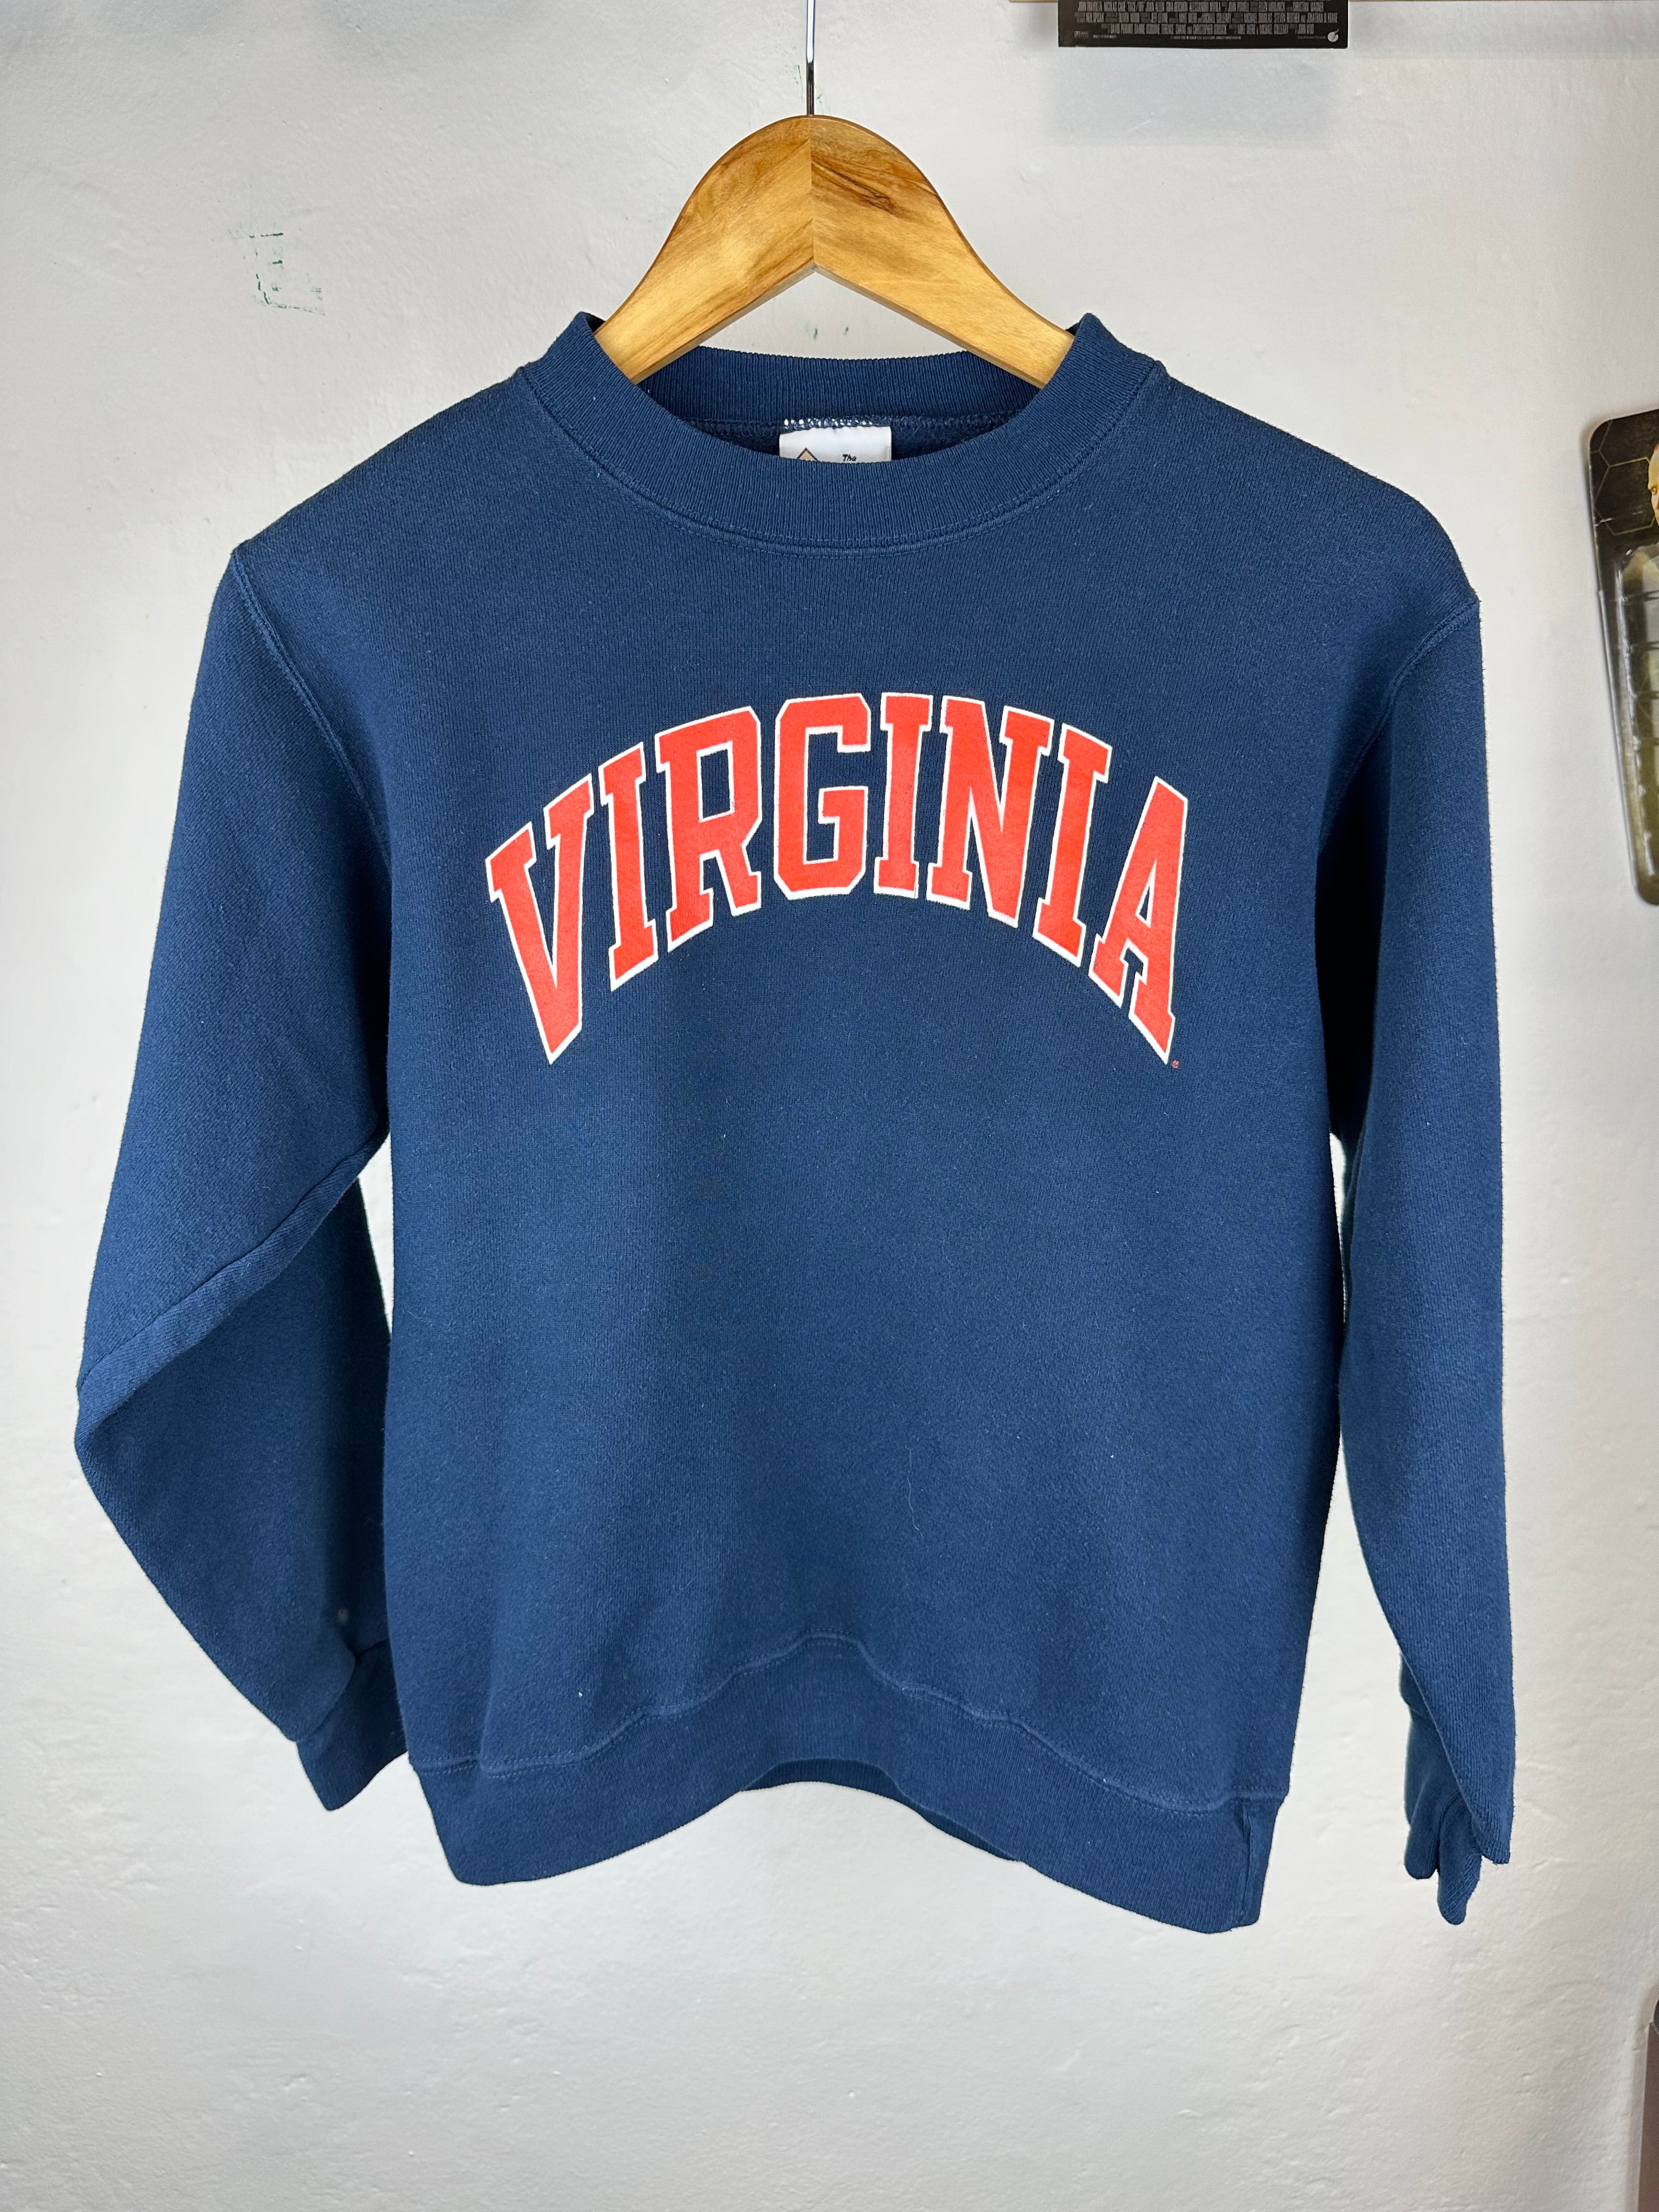 Vintage Virginia 80s Crewneck - size S